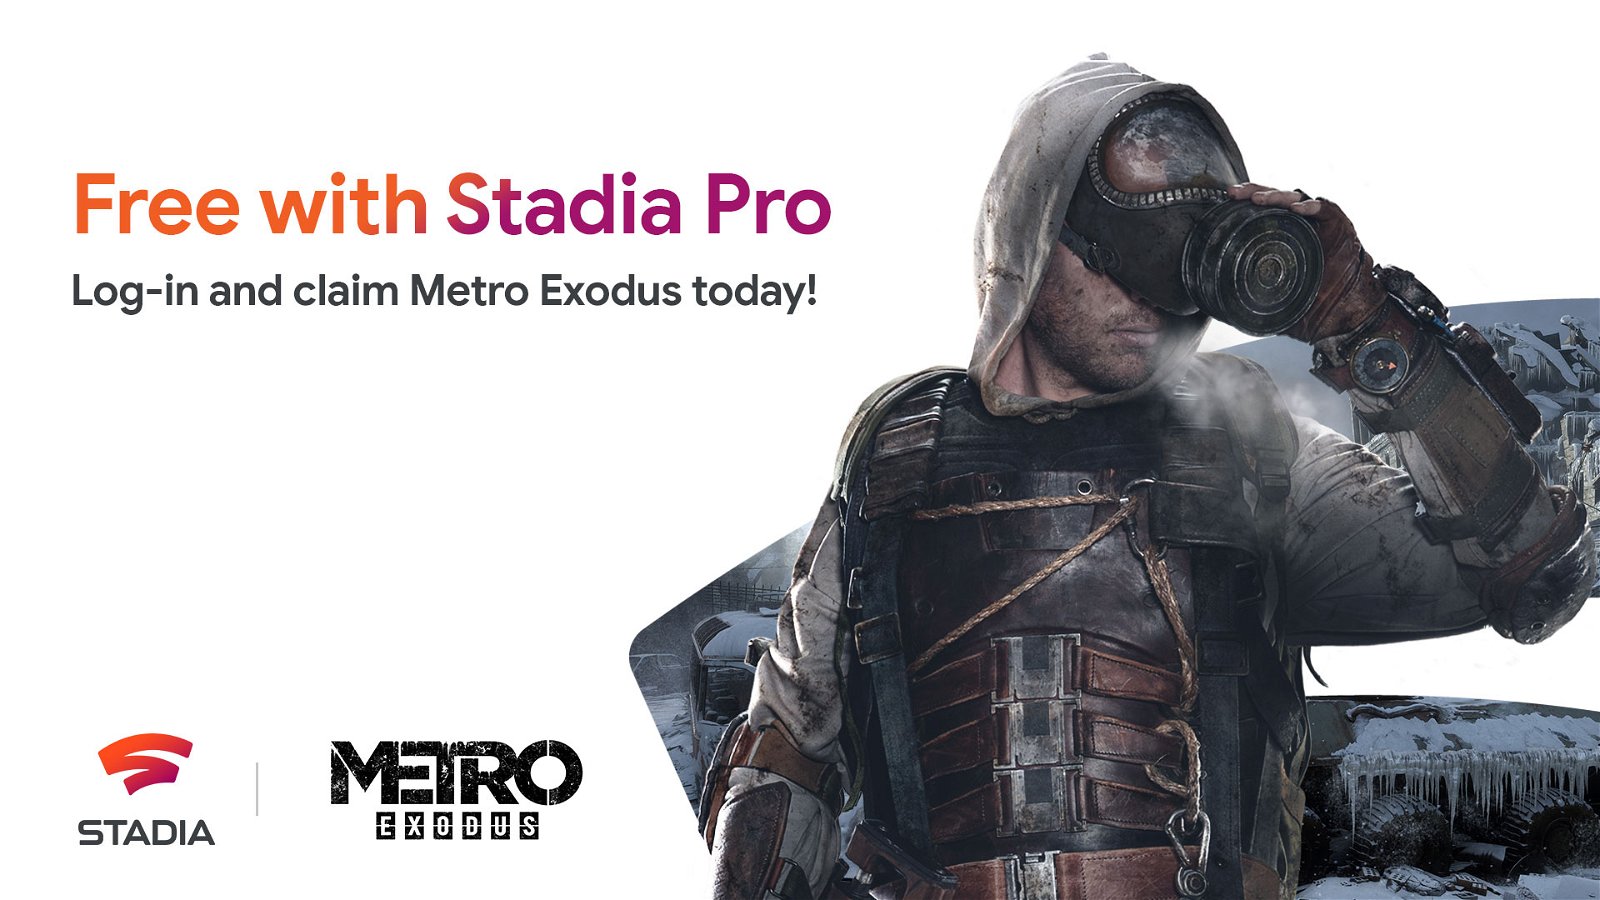 Google ricorda che Metro Exodus è disponibile agli abbonati a Stadia Pro